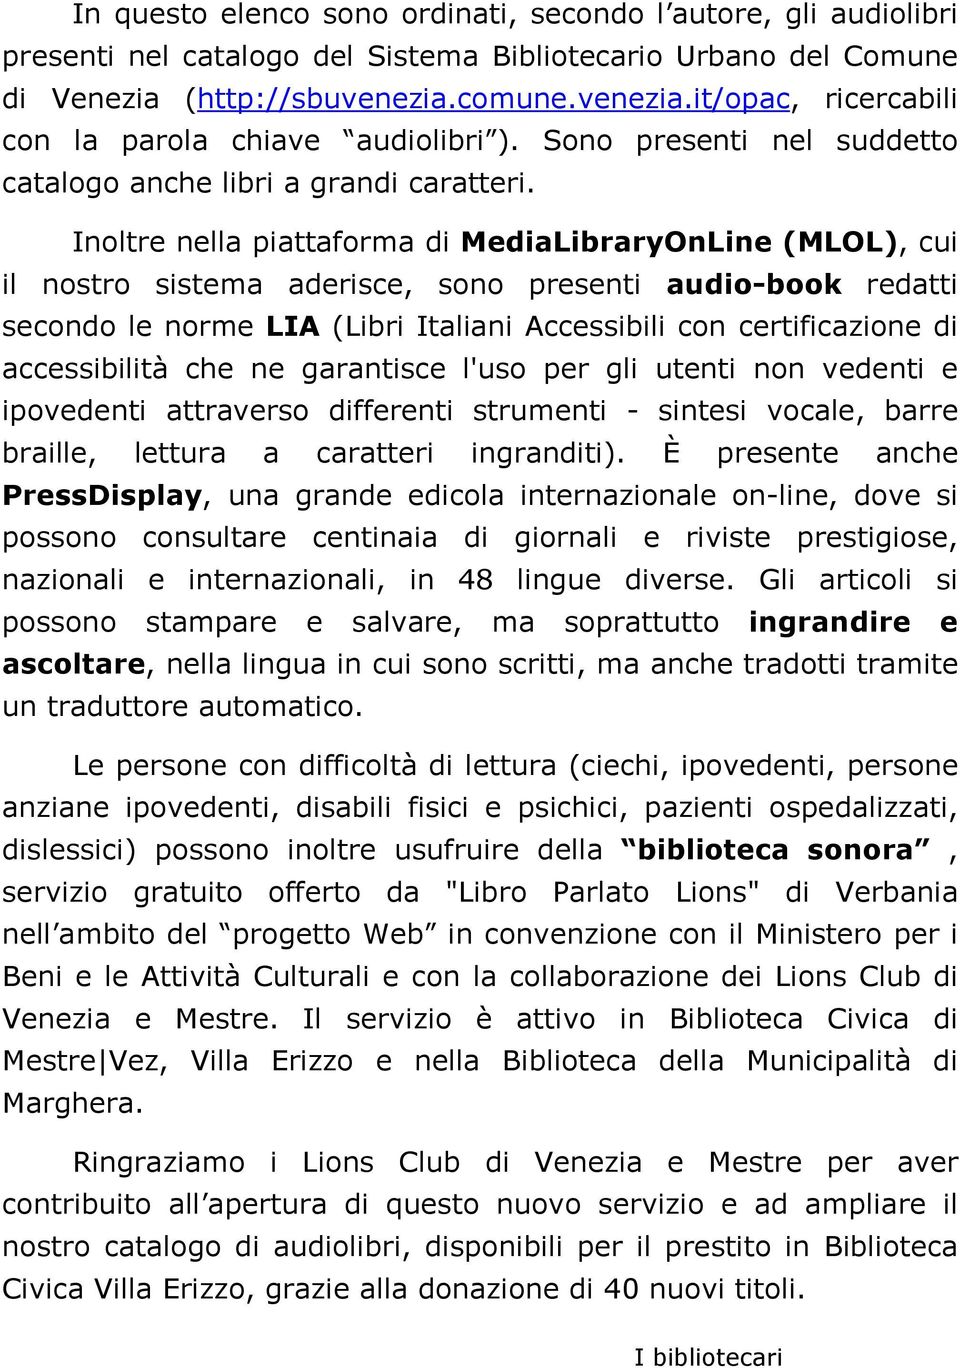 Inoltre nella piattaforma di MediaLibraryOnLine (MLOL), cui il nostro sistema aderisce, sono presenti audio-book redatti secondo le norme LIA (Libri Italiani Accessibili con certificazione di